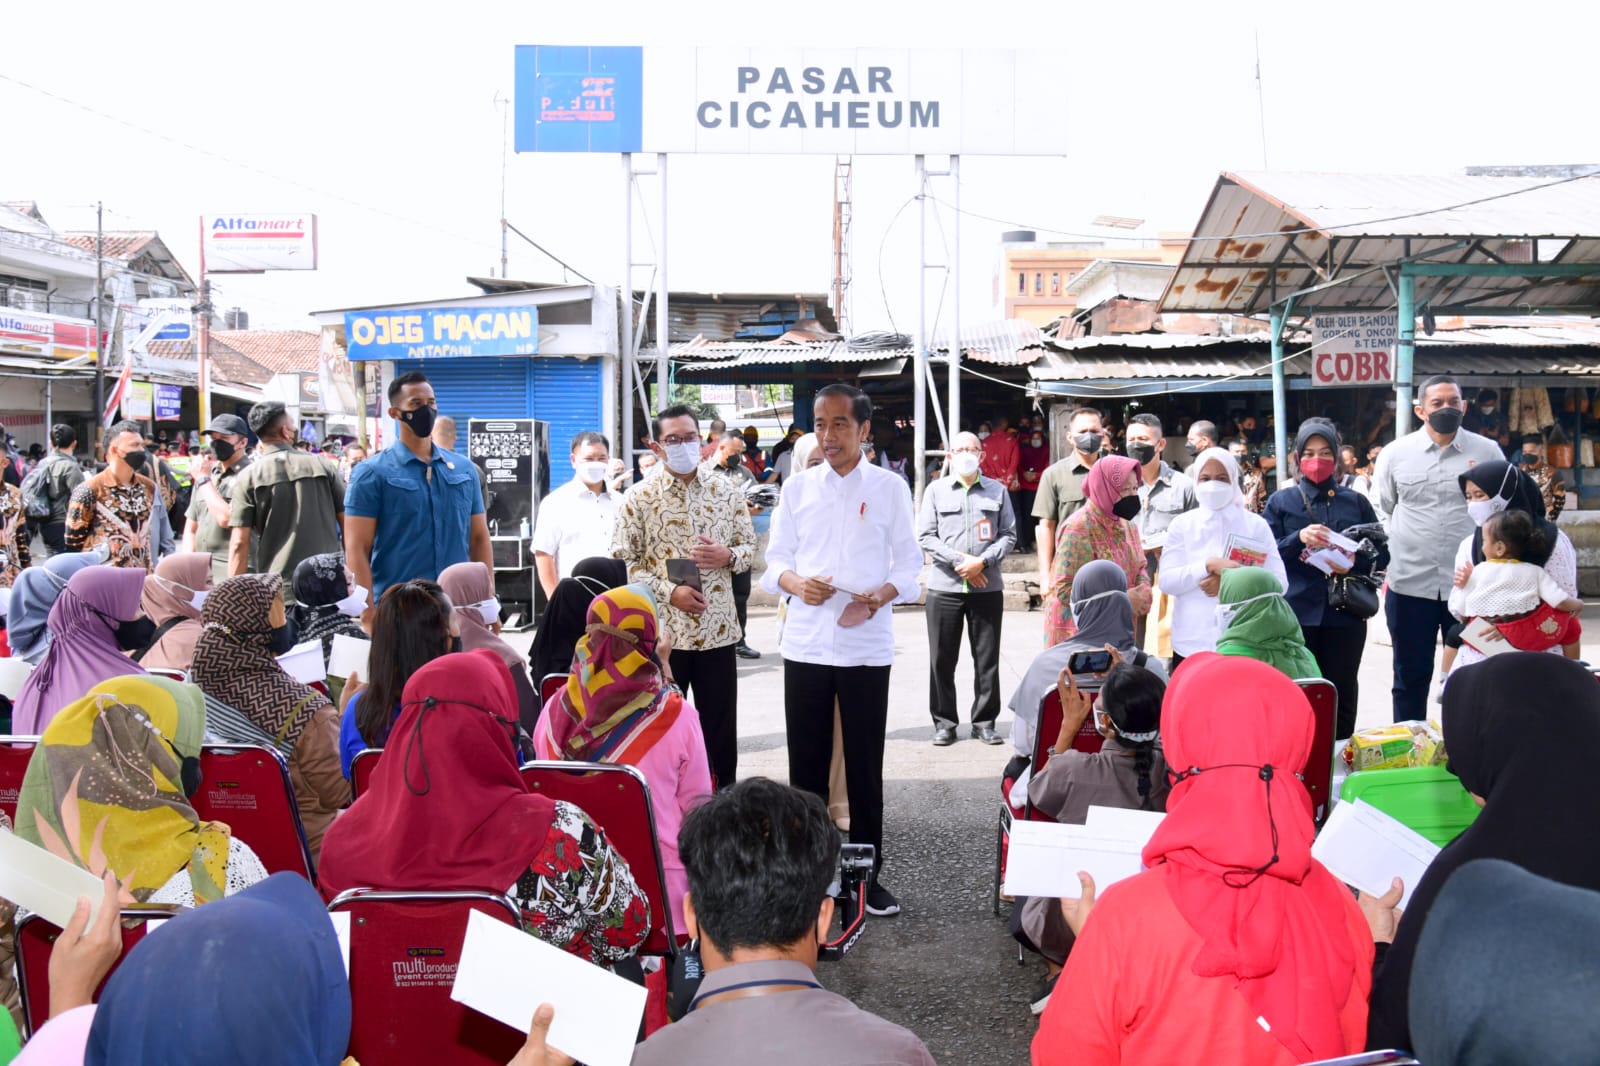 Presiden Jokowi dan Ibu Iriana Mengunjungi Pasar Cicaheum, Bandung